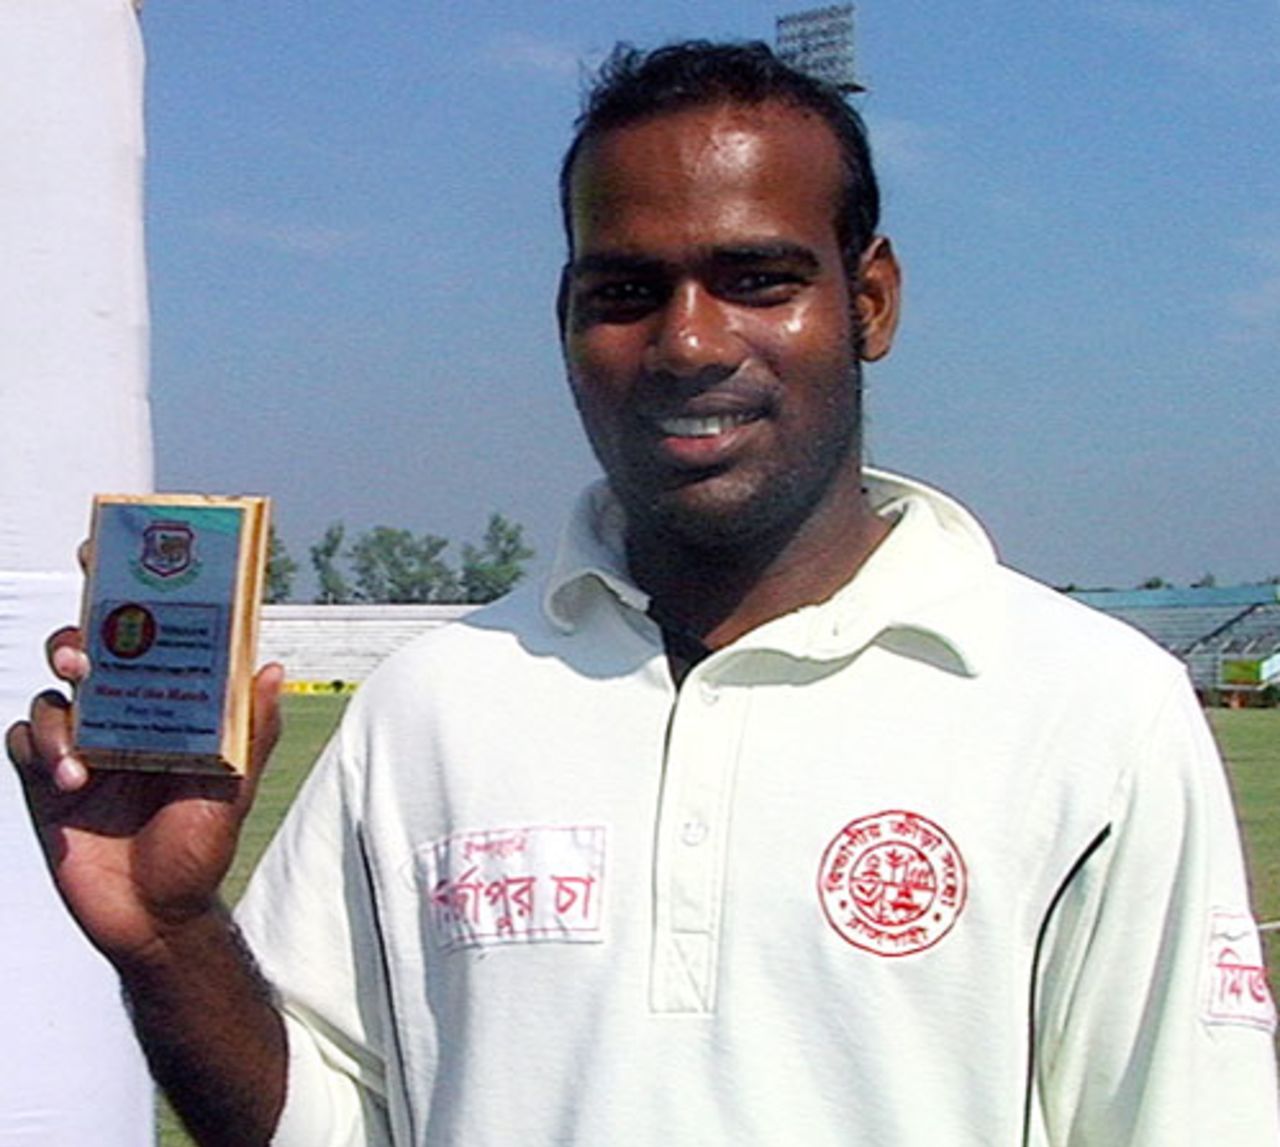 Rajshahi's Alamgir Kabir was named Man of the Match, Rajshahi v Barisal, Bogra, December 5, 2007